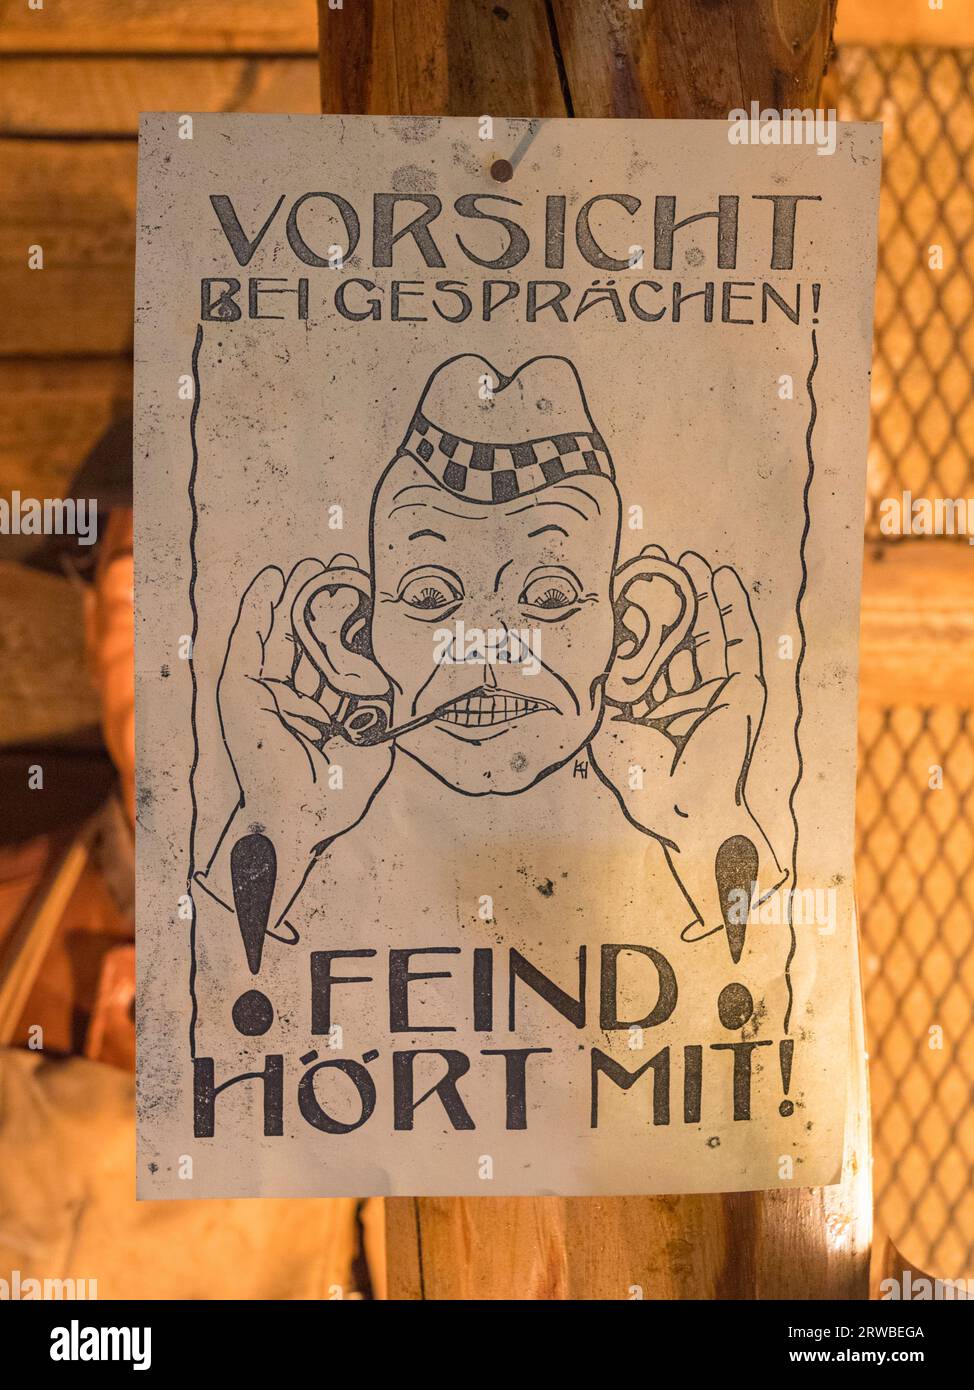 Poster tedesco che ricorda alle truppe di non parlare in caso il nemico possa sentire, in mostra al Royal Engineers Museum di Gillingham, Kent, Regno Unito. Foto Stock